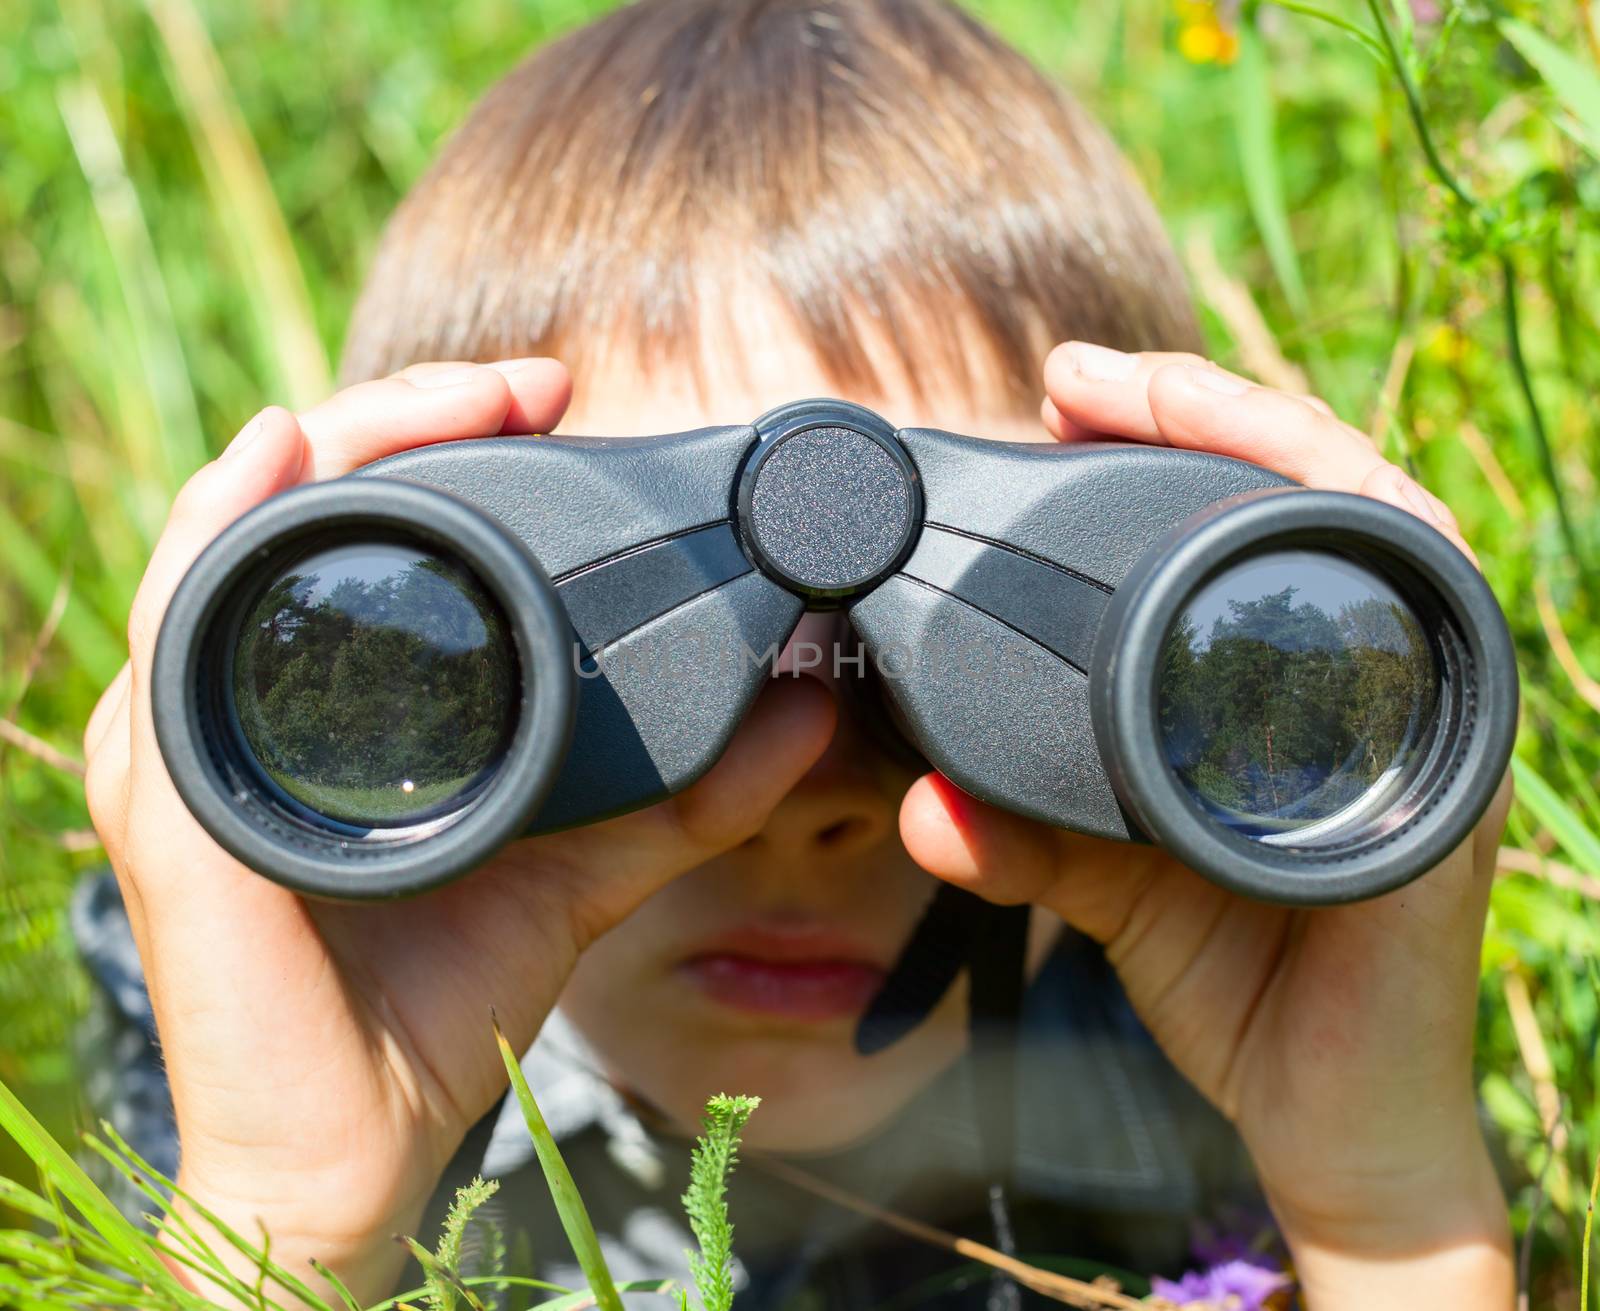 Boy hiding in grass looking through binoculars outdoor